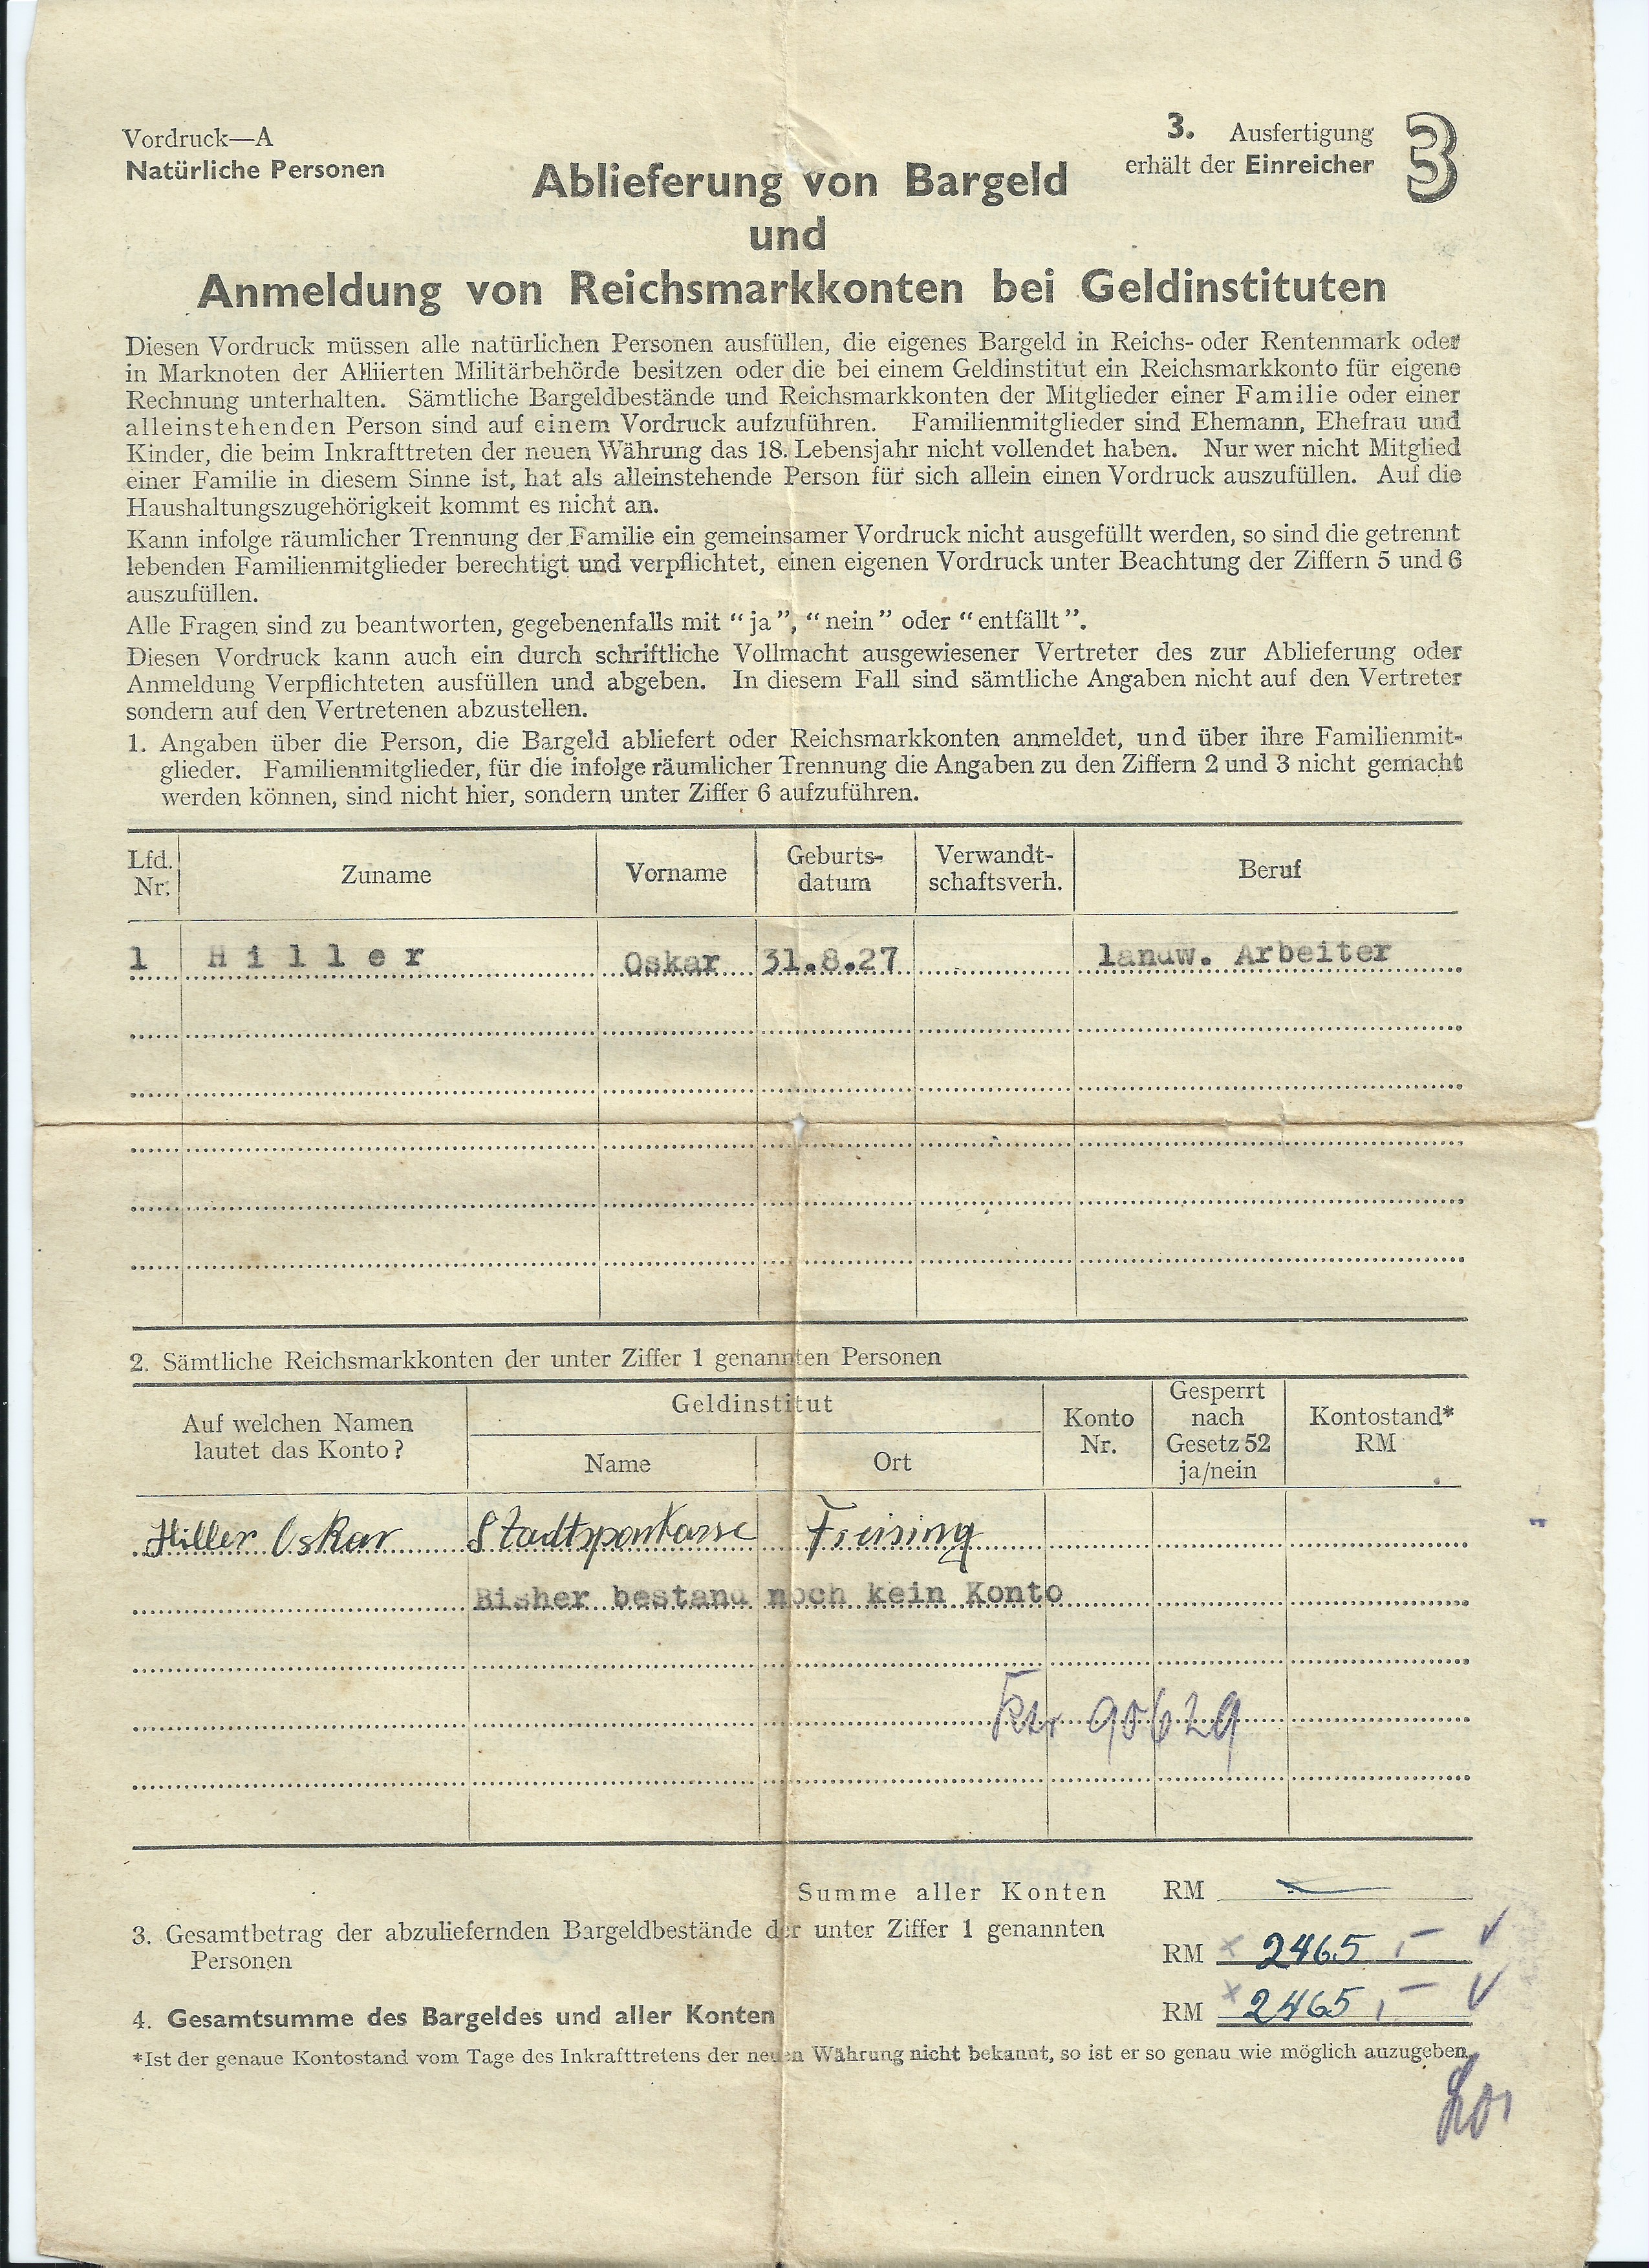 Dokument des abgelieferten Bargelds von Oskar Hiller bei der Sparkasse Freising